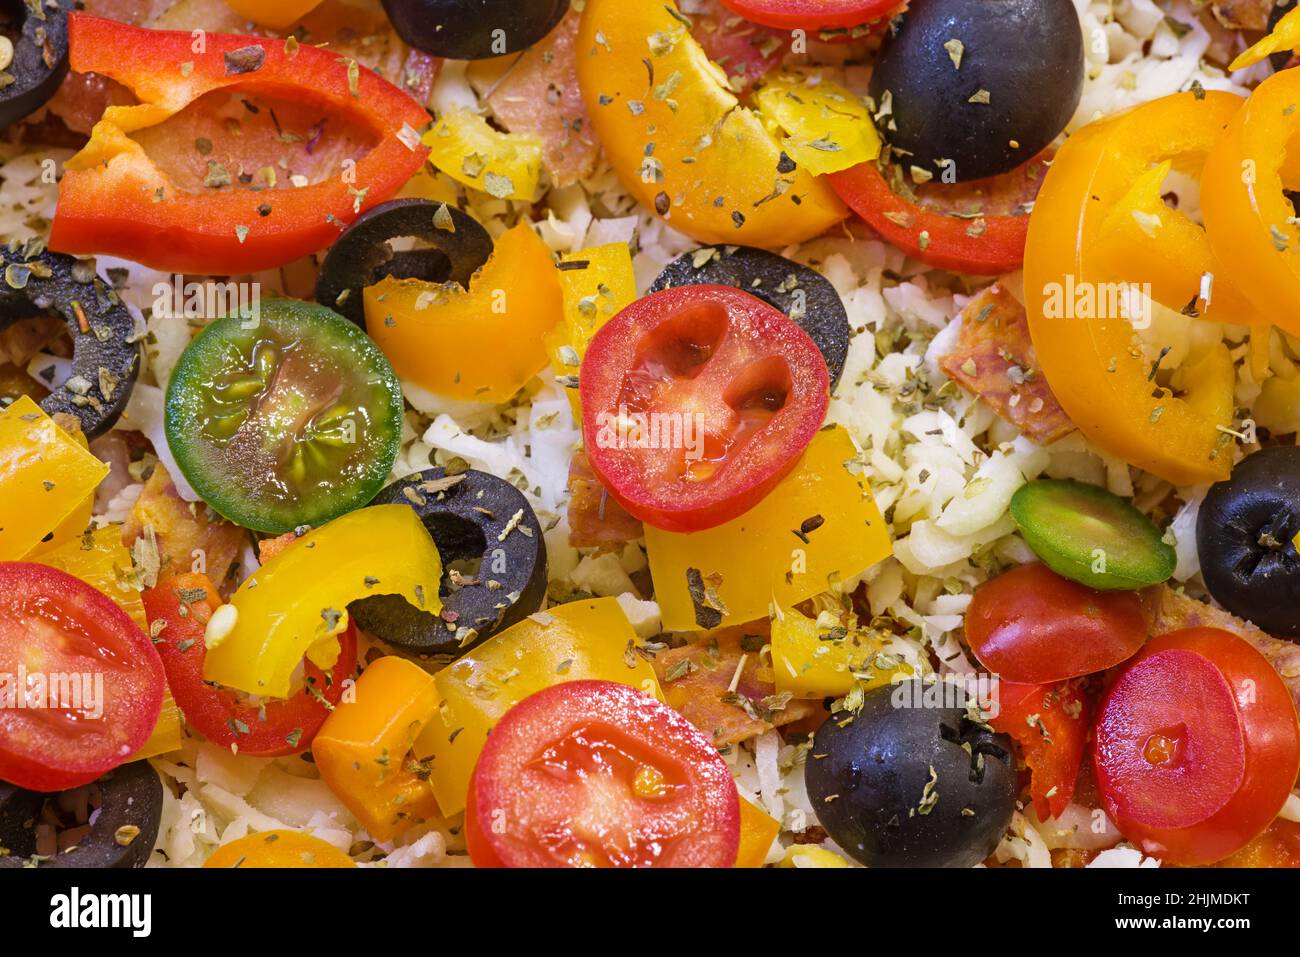 detalle de una pizza casera sin hornear con pimientos, tomate, aceitunas, queso y hierbas listas para hornear Foto de stock